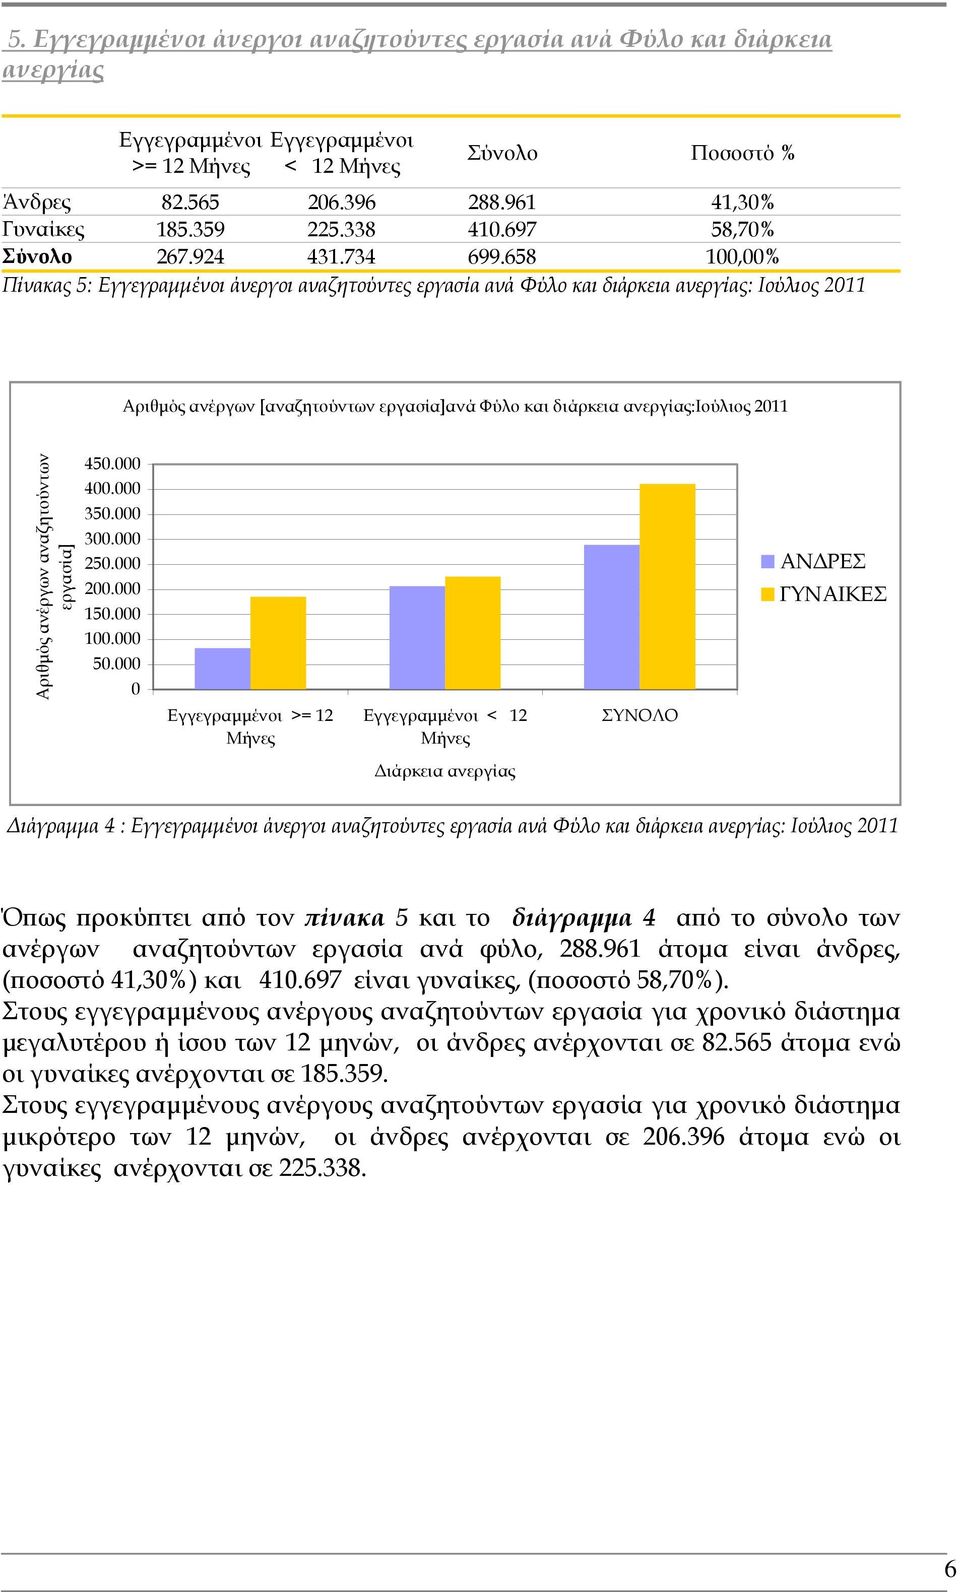 658 100,00% Πίνακας 5: άνεργοι αναζητούντες εργασία ανά Φύλο και διάρκεια ανεργίας: Ιούλιος 2011 Αριθμός ανέργων [αναζητούντων εργασία]ανά Φύλο και διάρκεια ανεργίας:ιούλιος 2011 Αριθμός ανέργων